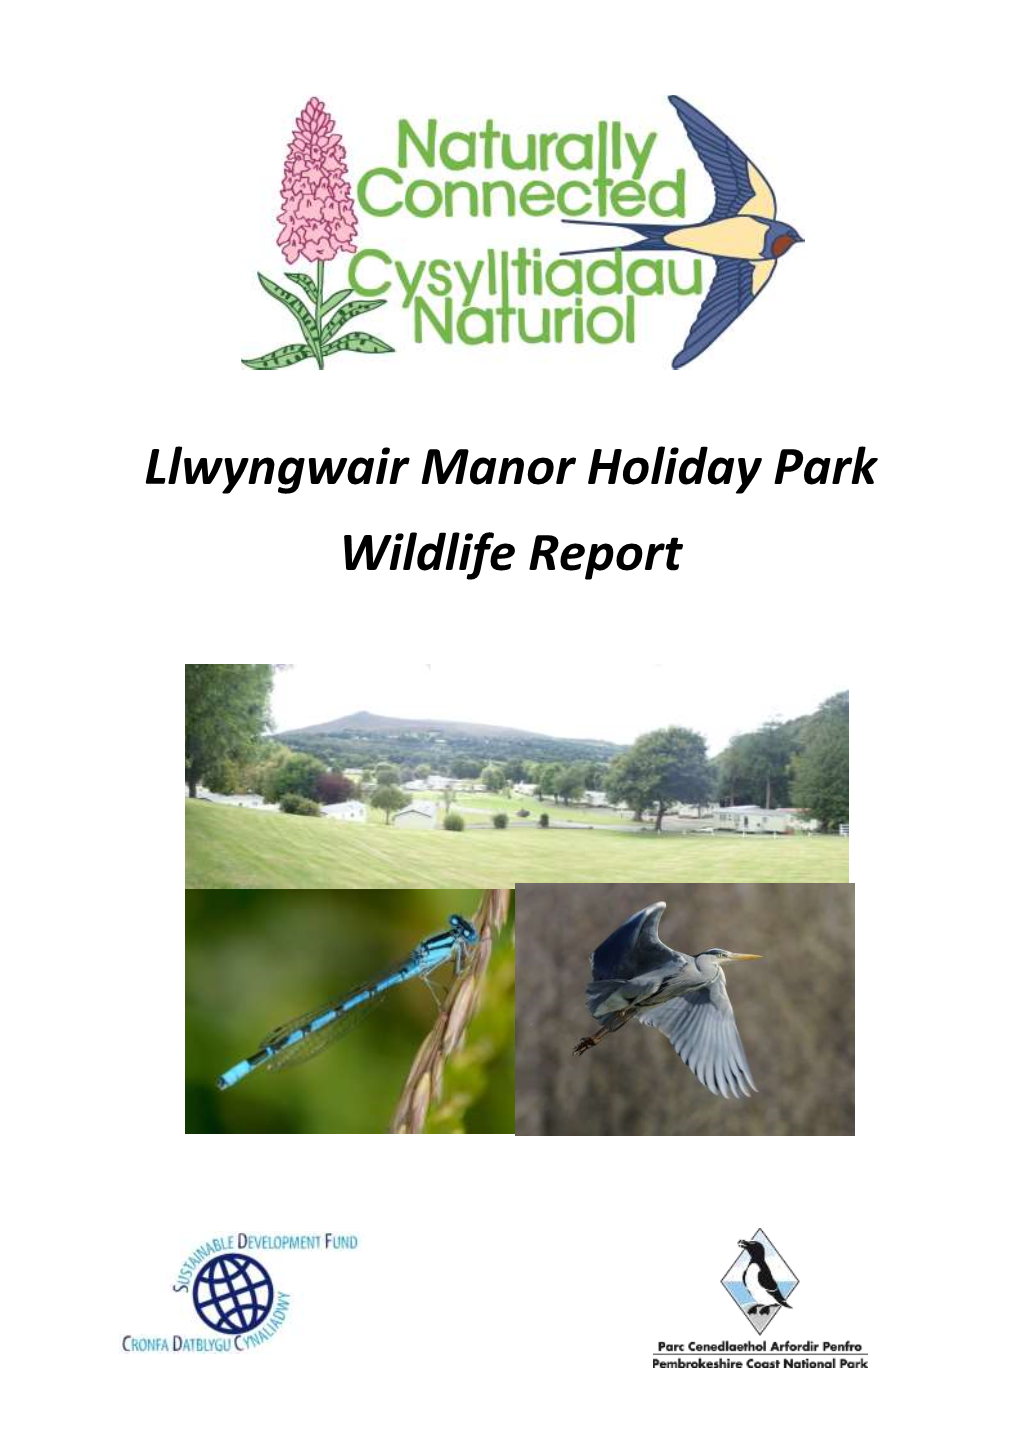 Llwyngwair Manor Holiday Park Wildlife Report